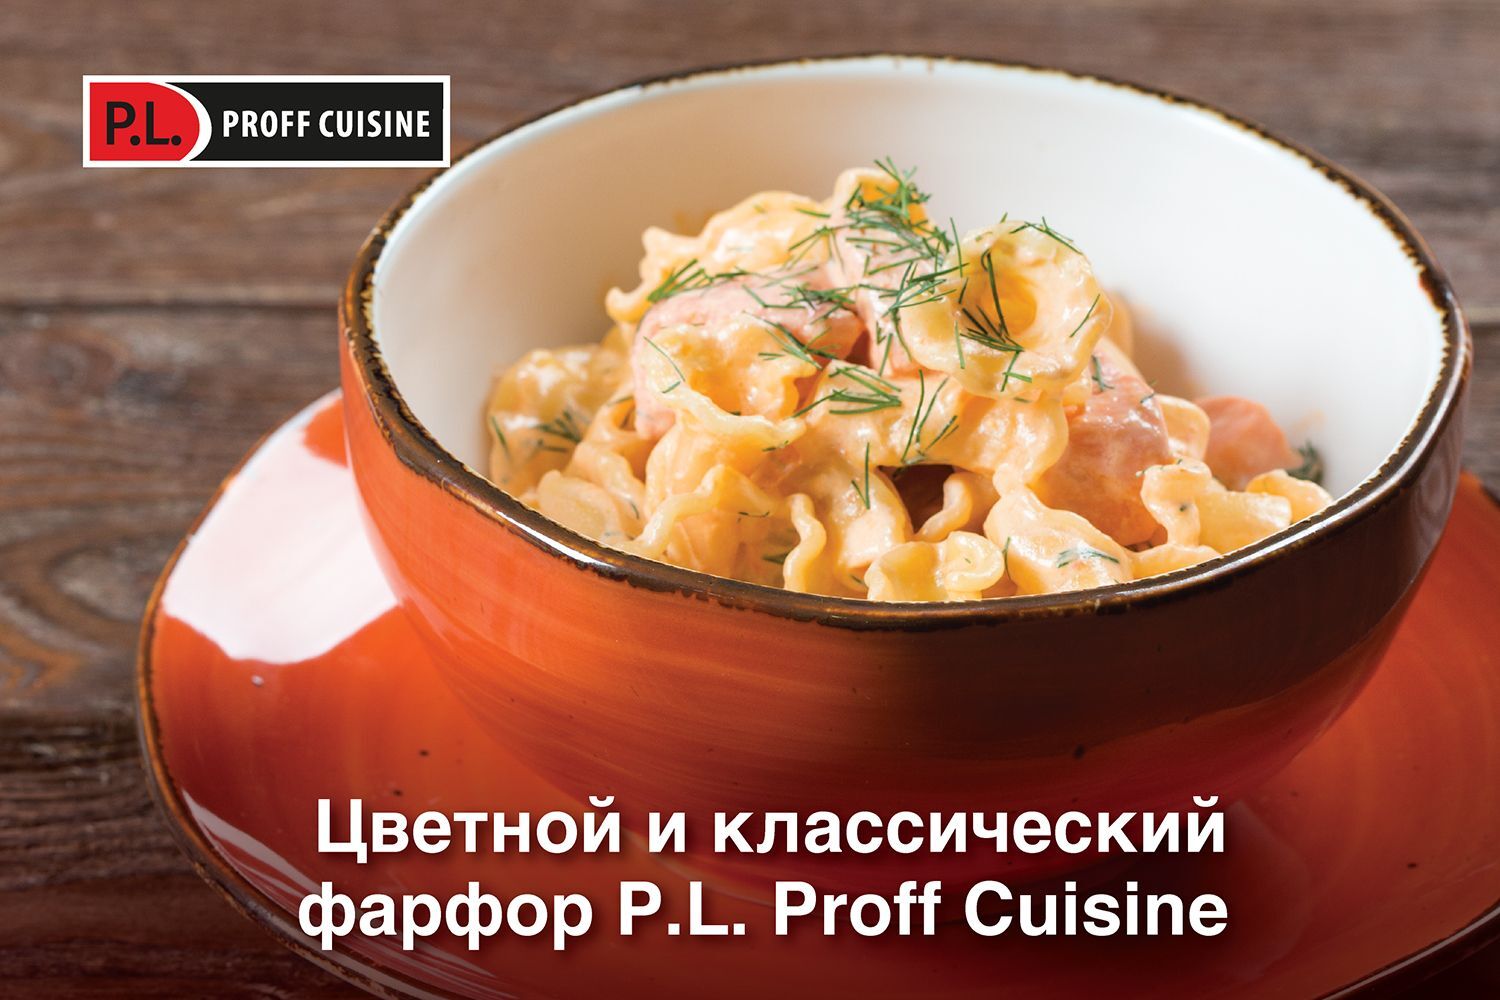 Цветной и классический фарфор P.L. Proff Cuisine!